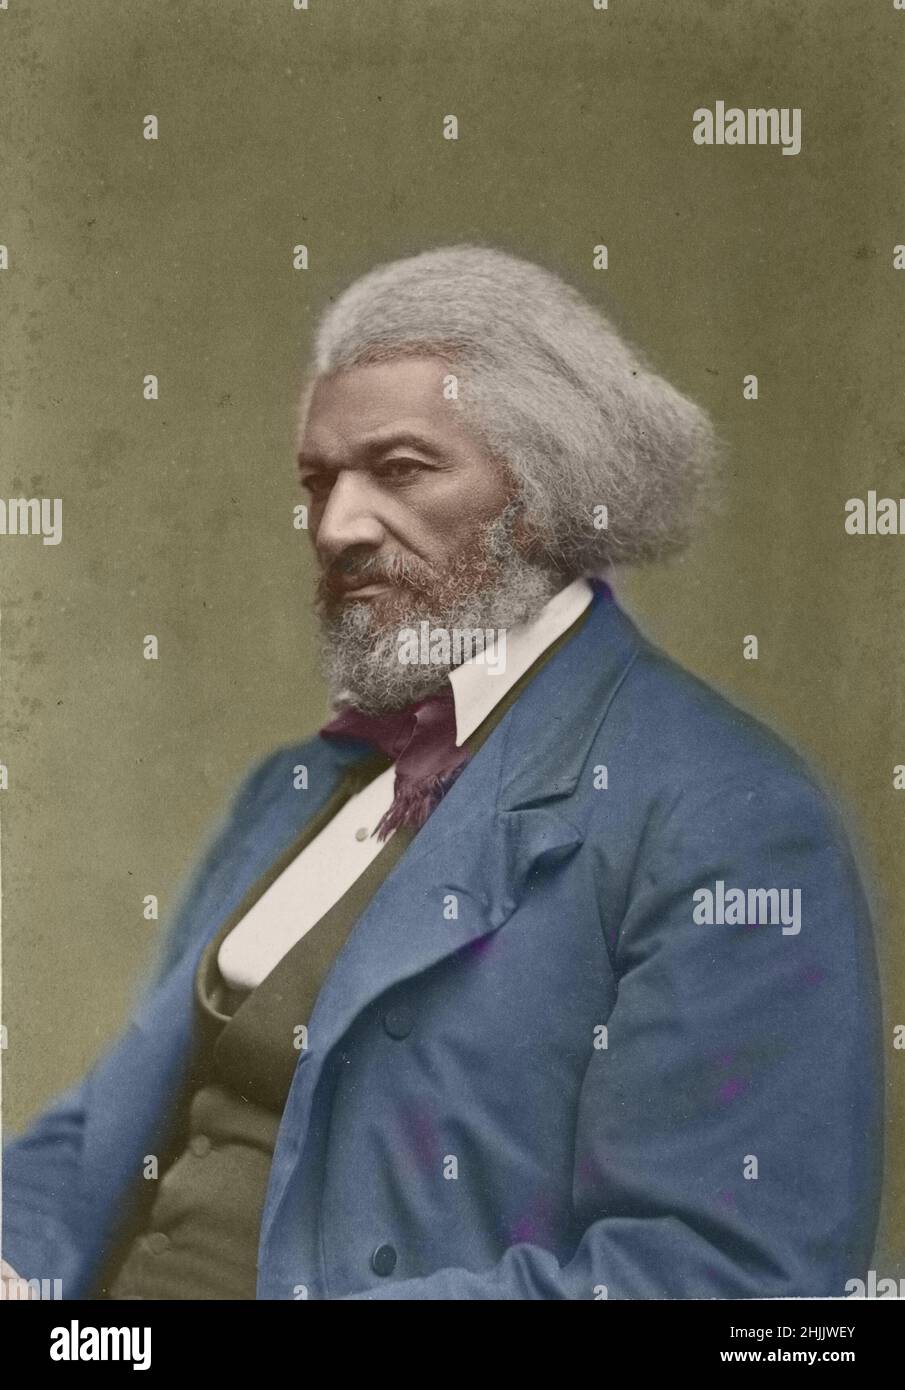 Ritratto di Frederick Douglass 1880 colorato a mano. Riformatore sociale afro-americano, abolizionista, oratore, scrittore. Fotografia Colorizzata manualmente. Foto Stock